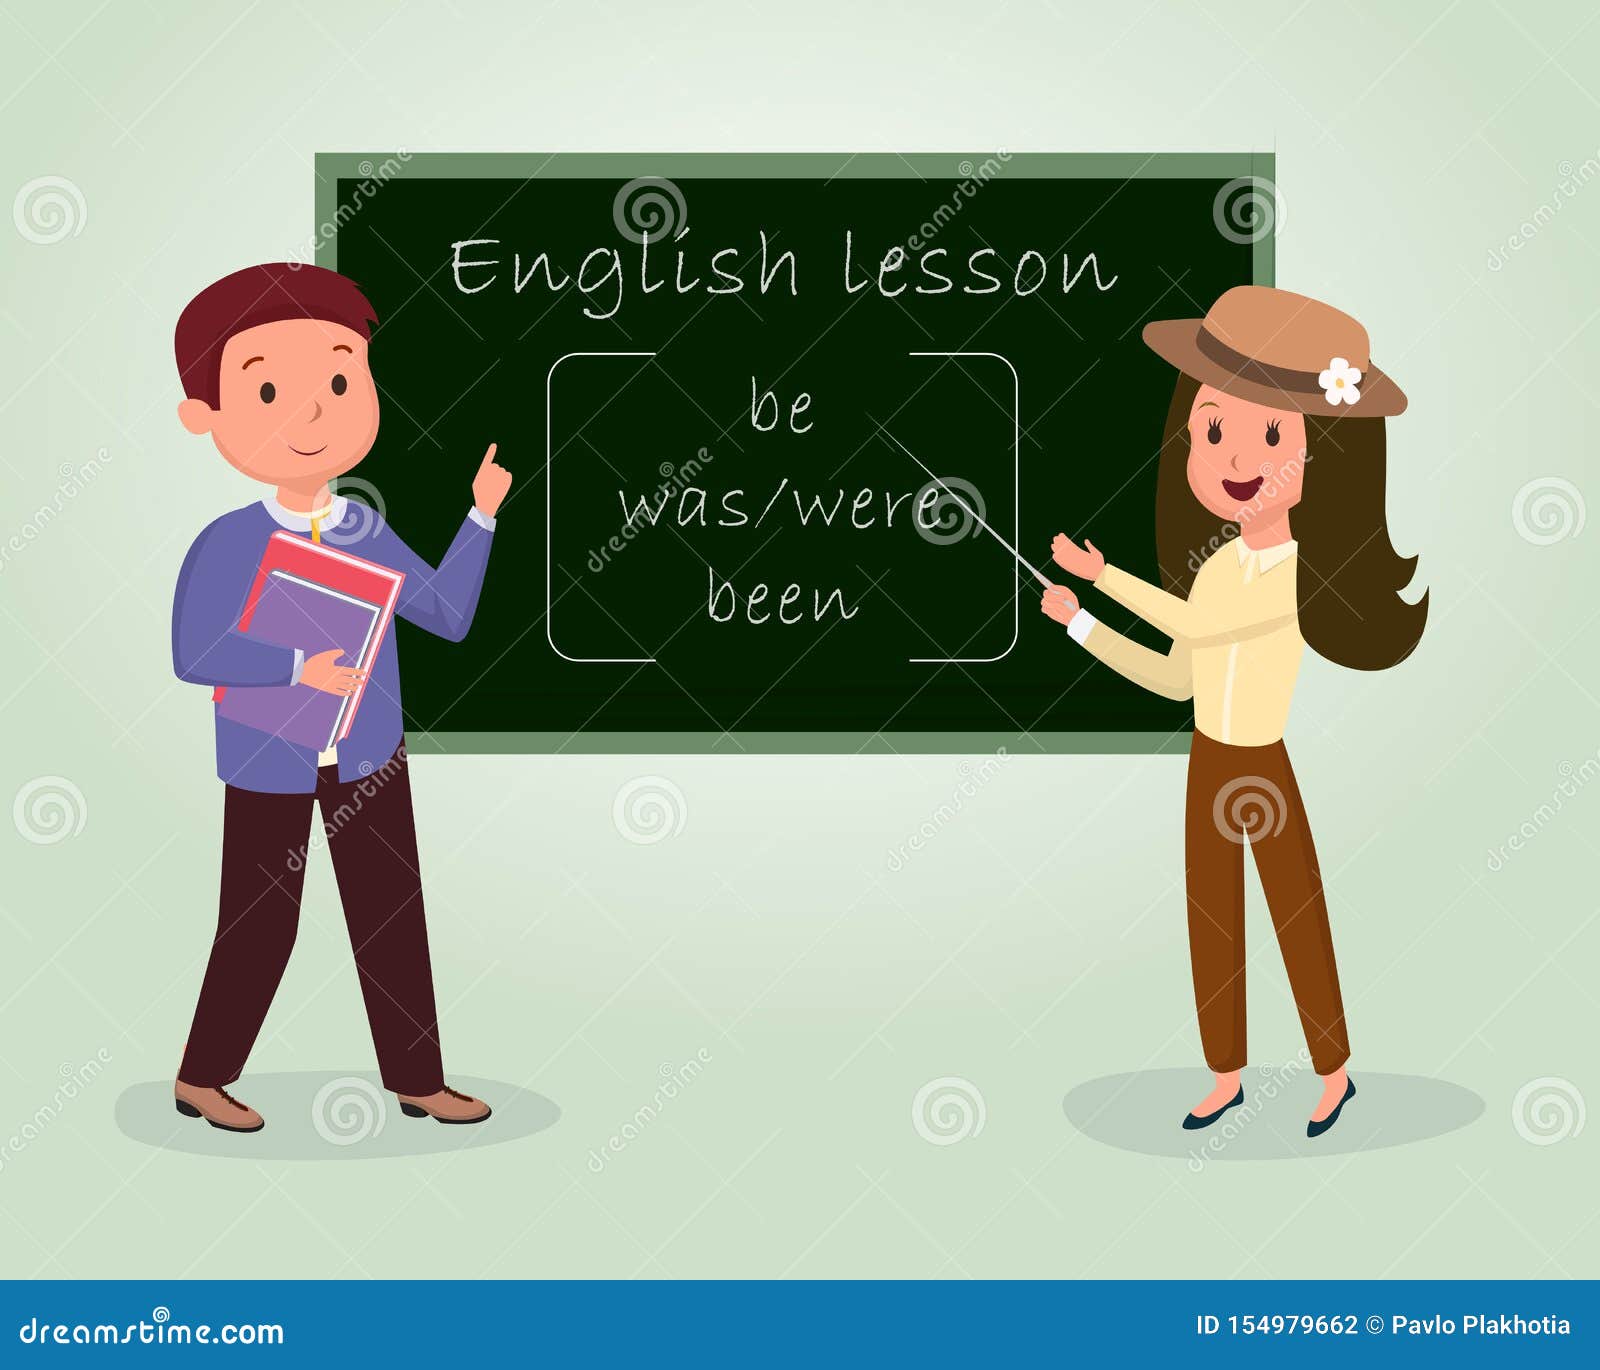 Хорошего урока на английском. Урок английского языка картинки. Преподавание рисунок английского. Урок на английском о уроках. Урок английского языка рисунок.